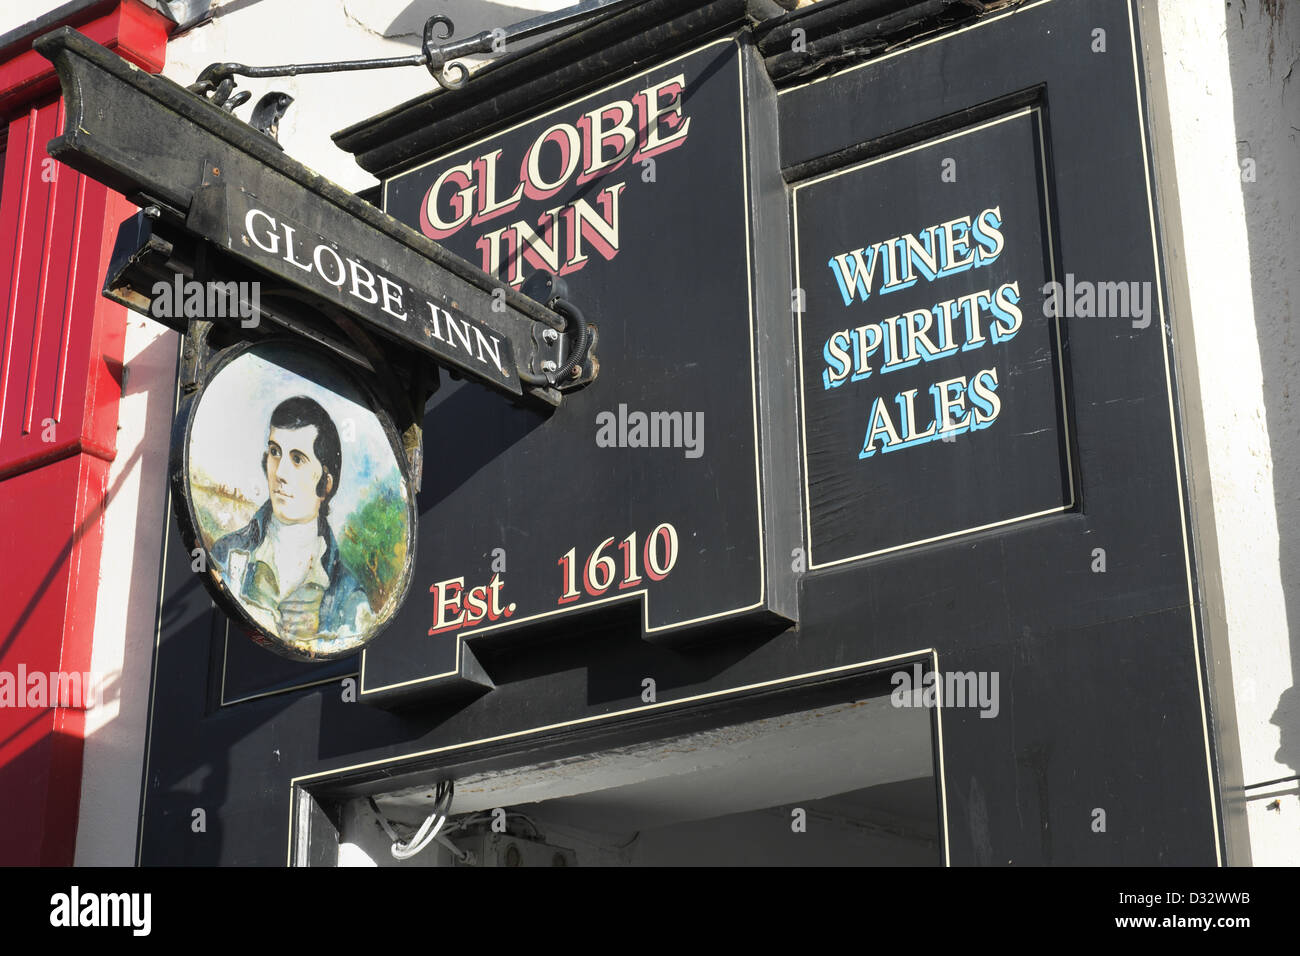 Globe Inn pub segno, Dumfries - dove Robert Burns ha scritto molte delle sue poesie Foto Stock